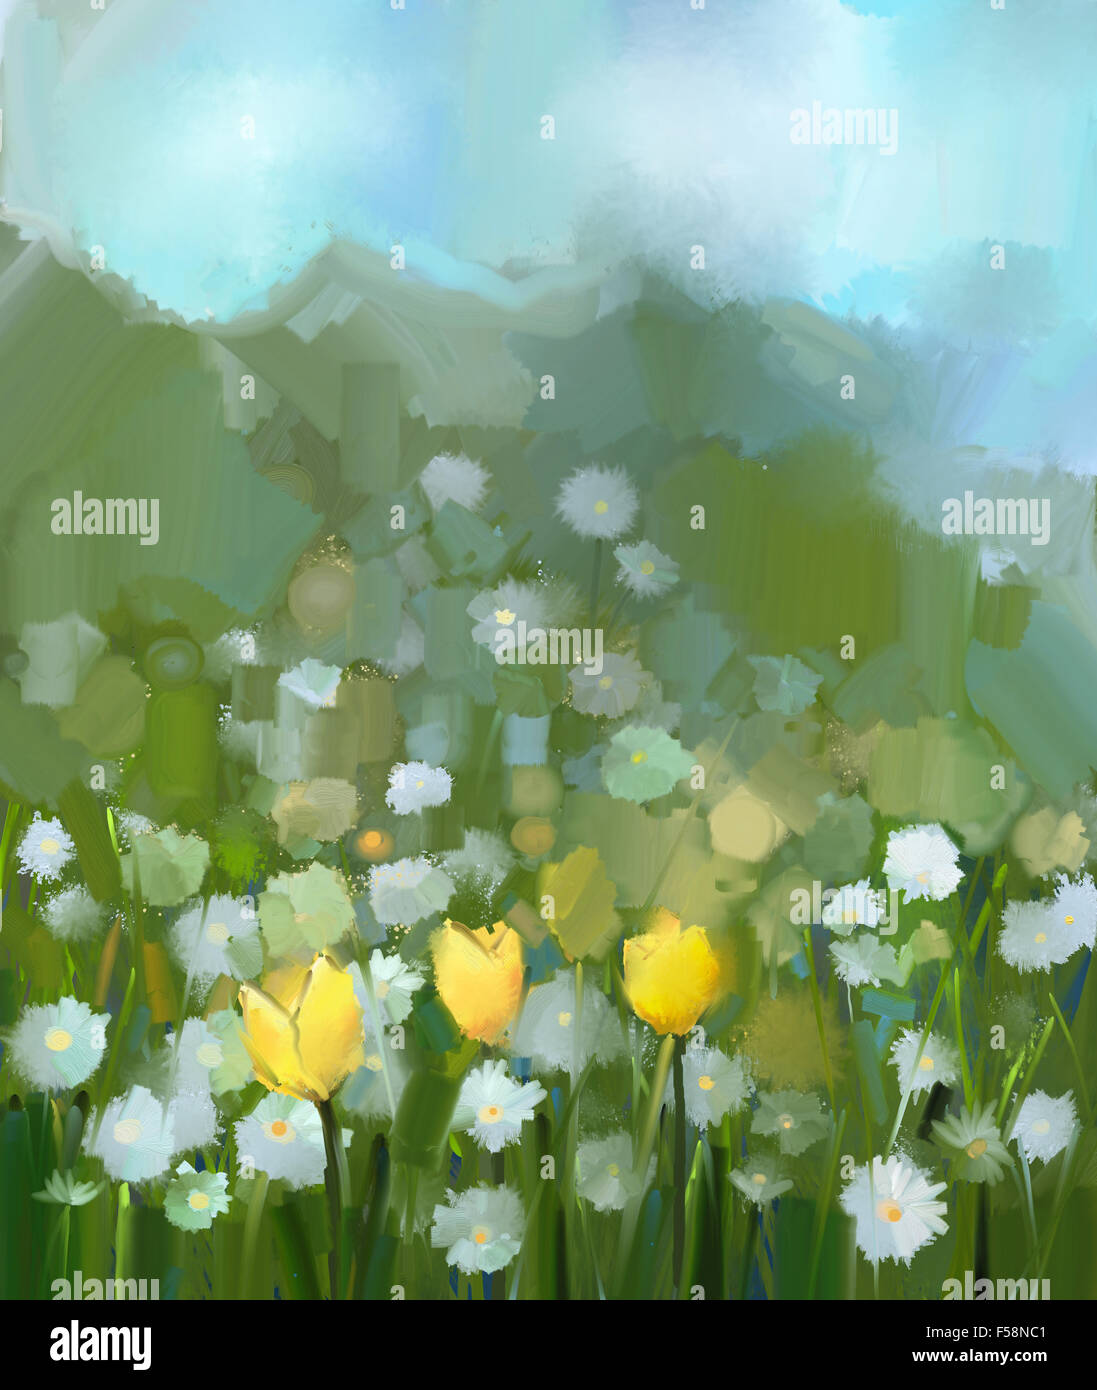 Peinture à l'huile domaine de tulipe jaune et blanc fleurs Daisy .peint à la main, dans des tons doux et floral style floral printemps floue .s Banque D'Images